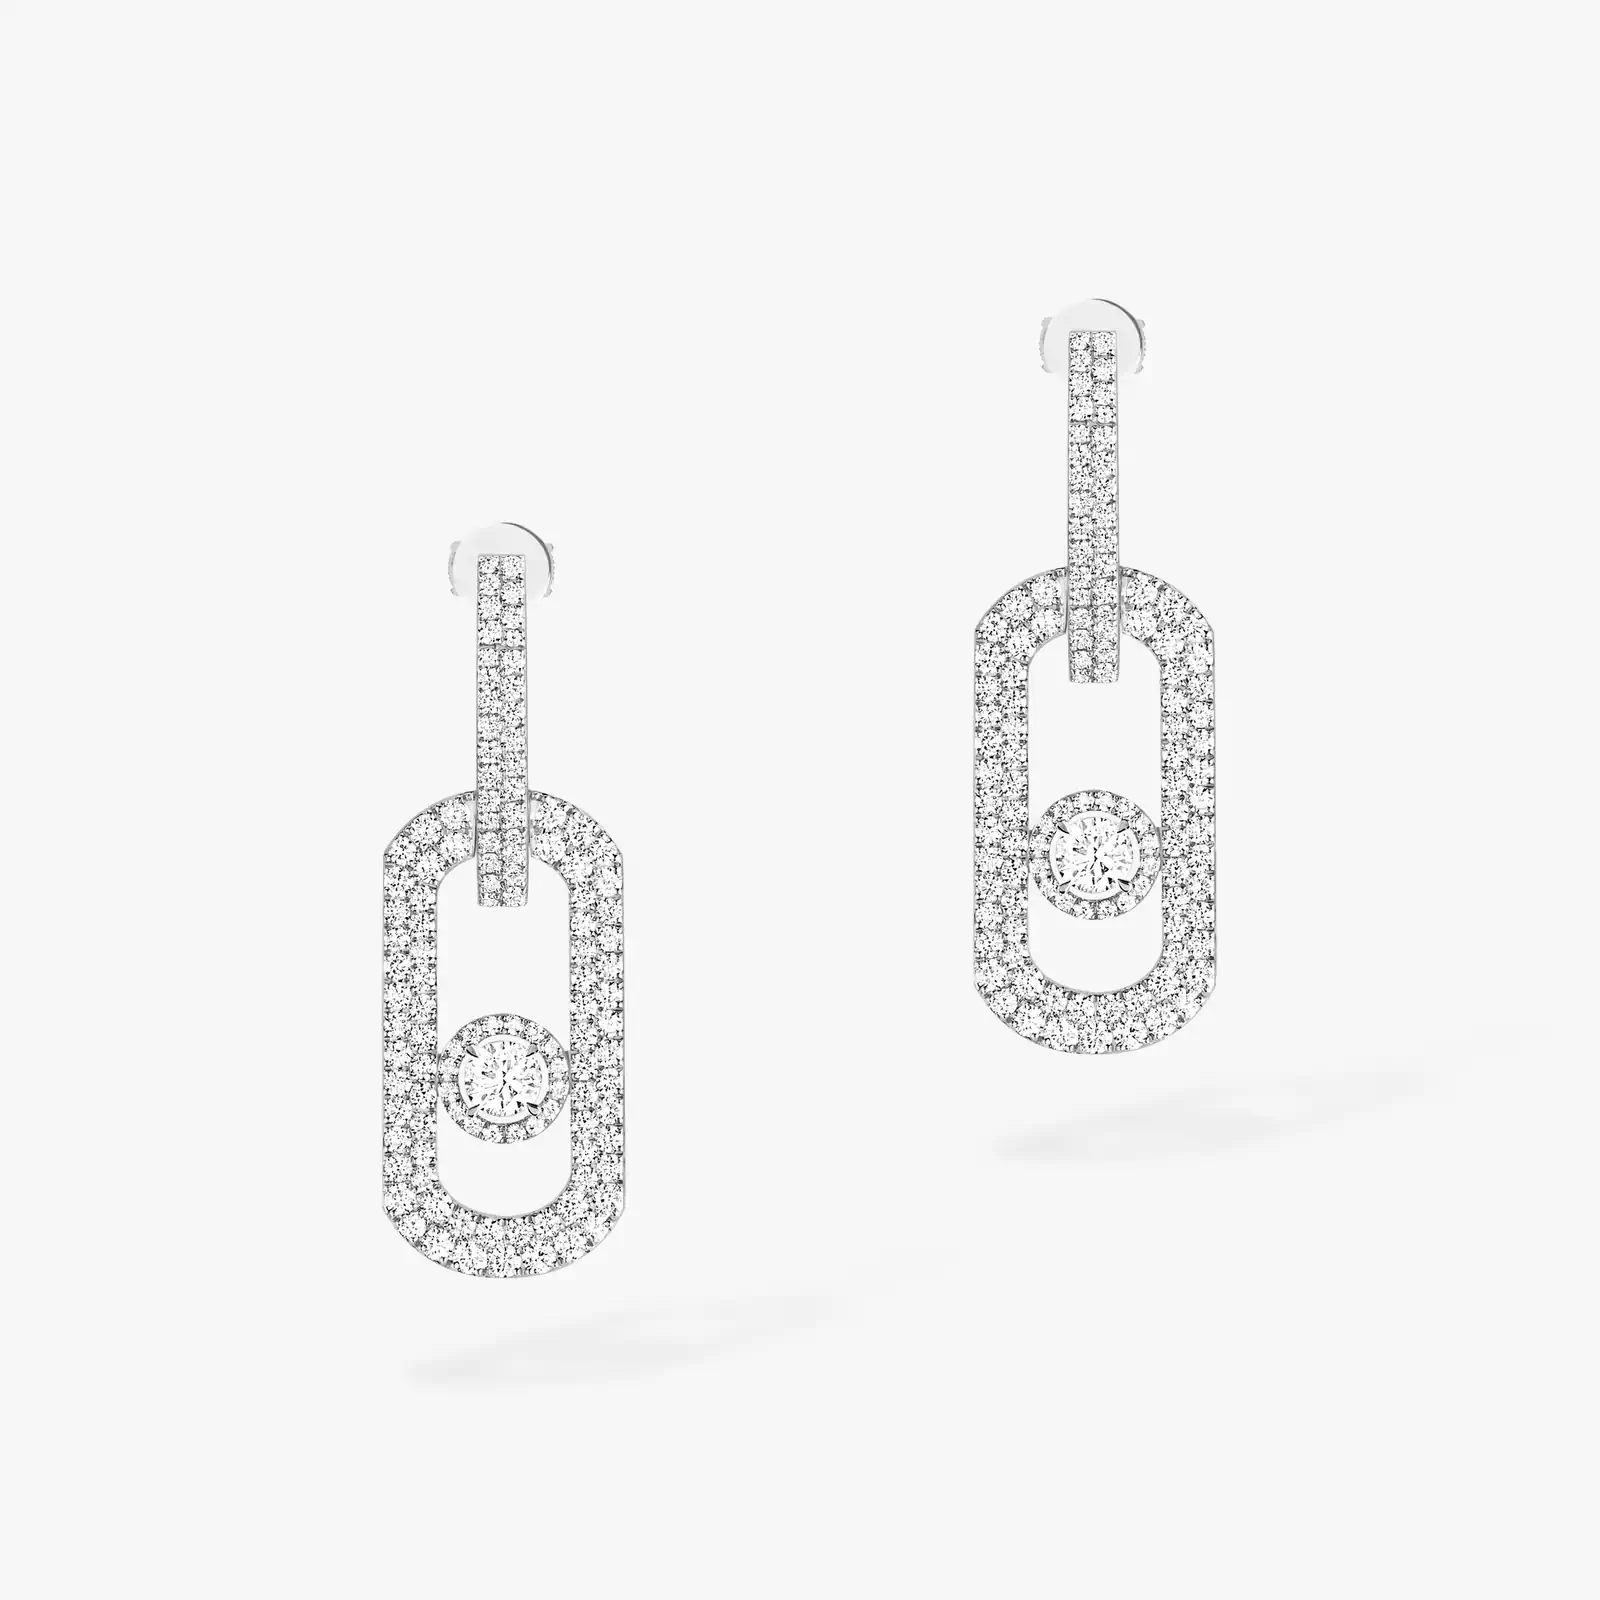 So Move XL Diamond Pavé Pendant Earrings White Gold For Her Diamond Earrings 13123-WG